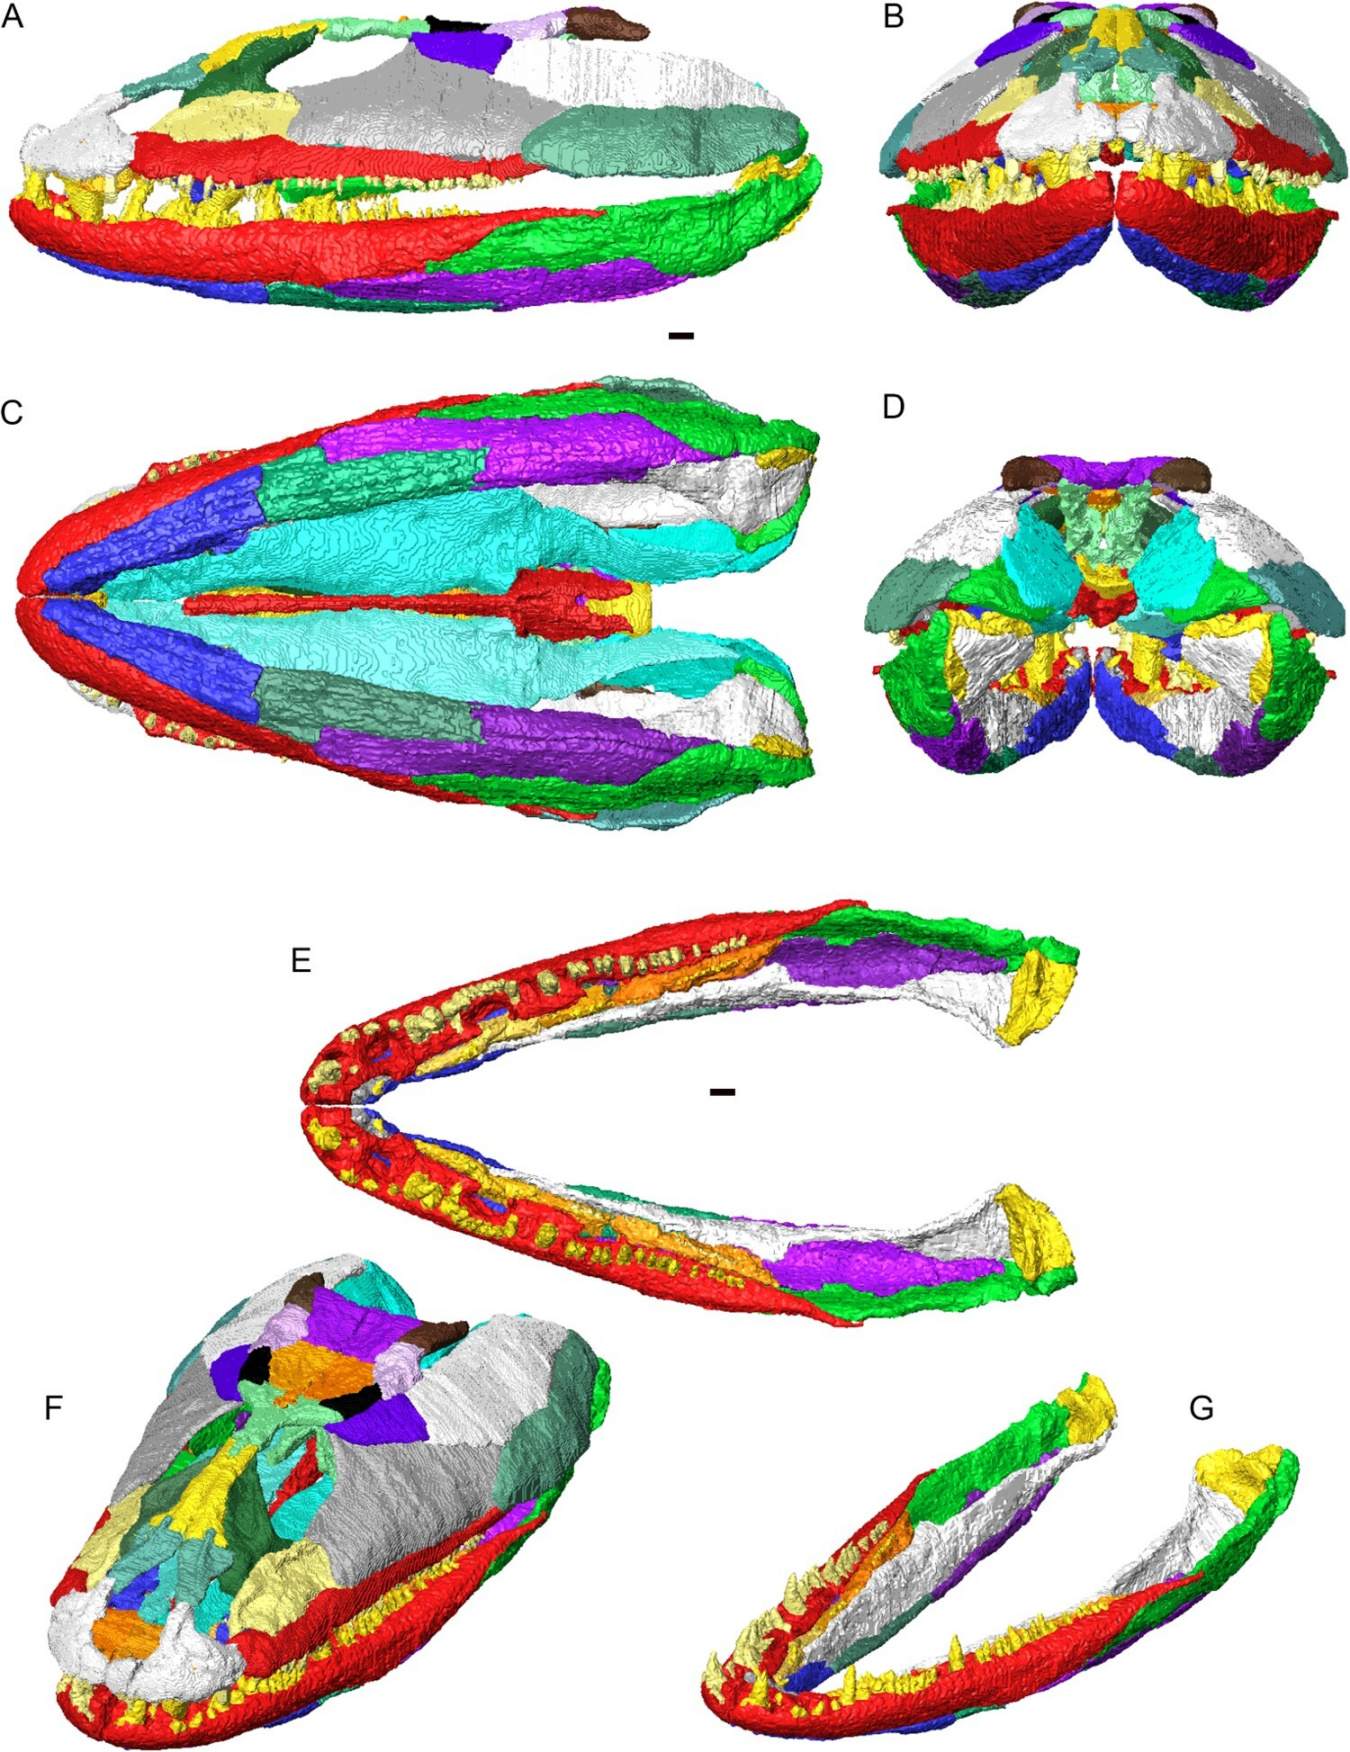 3D rekonstrukce lebky a dolní čelisti Crassigyrinus scoticus v artikulaci. Jednotlivé kosti zobrazené v různých barvách. A, levý boční pohled; B, pohled zepředu; C, ventrální pohled; D, zadní pohled; E, kloubové dolní čelisti (bez lebky) v dorzálním pohledu; F, lebka a dolní čelist v dorzolaterálním šikmém pohledu; G, kloubové dolní čelisti v dorzolaterálním šikmém pohledu.